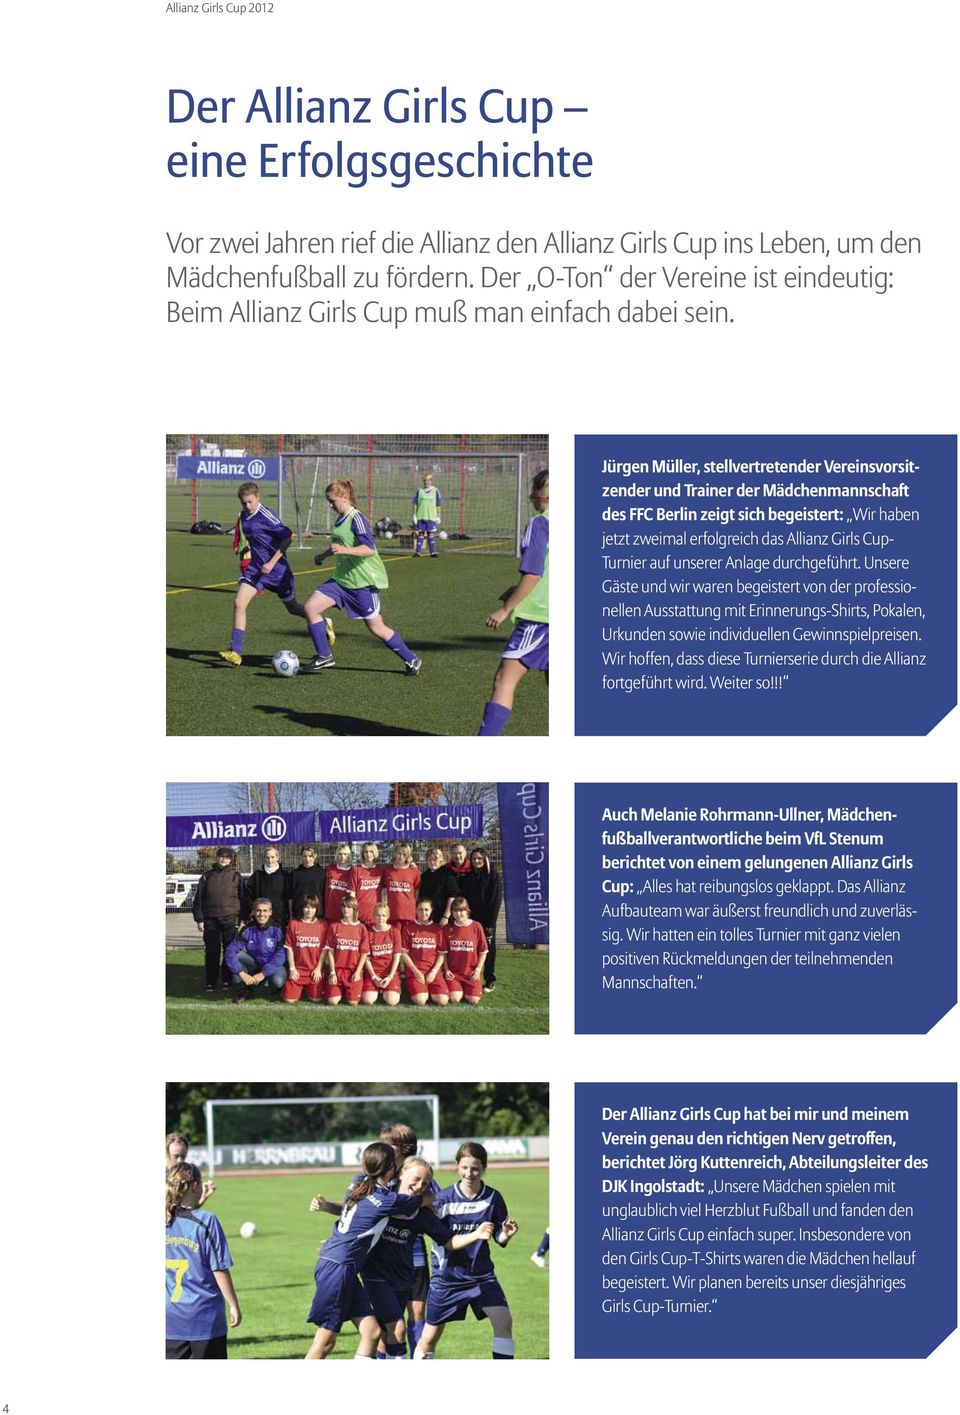 Jürgen Müller, stellvertretender Vereinsvorsitzender und Trainer der Mädchenmannschaft des FFC Berlin zeigt sich begeistert: Wir haben jetzt zweimal erfolgreich das Allianz Girls Cup- Turnier auf